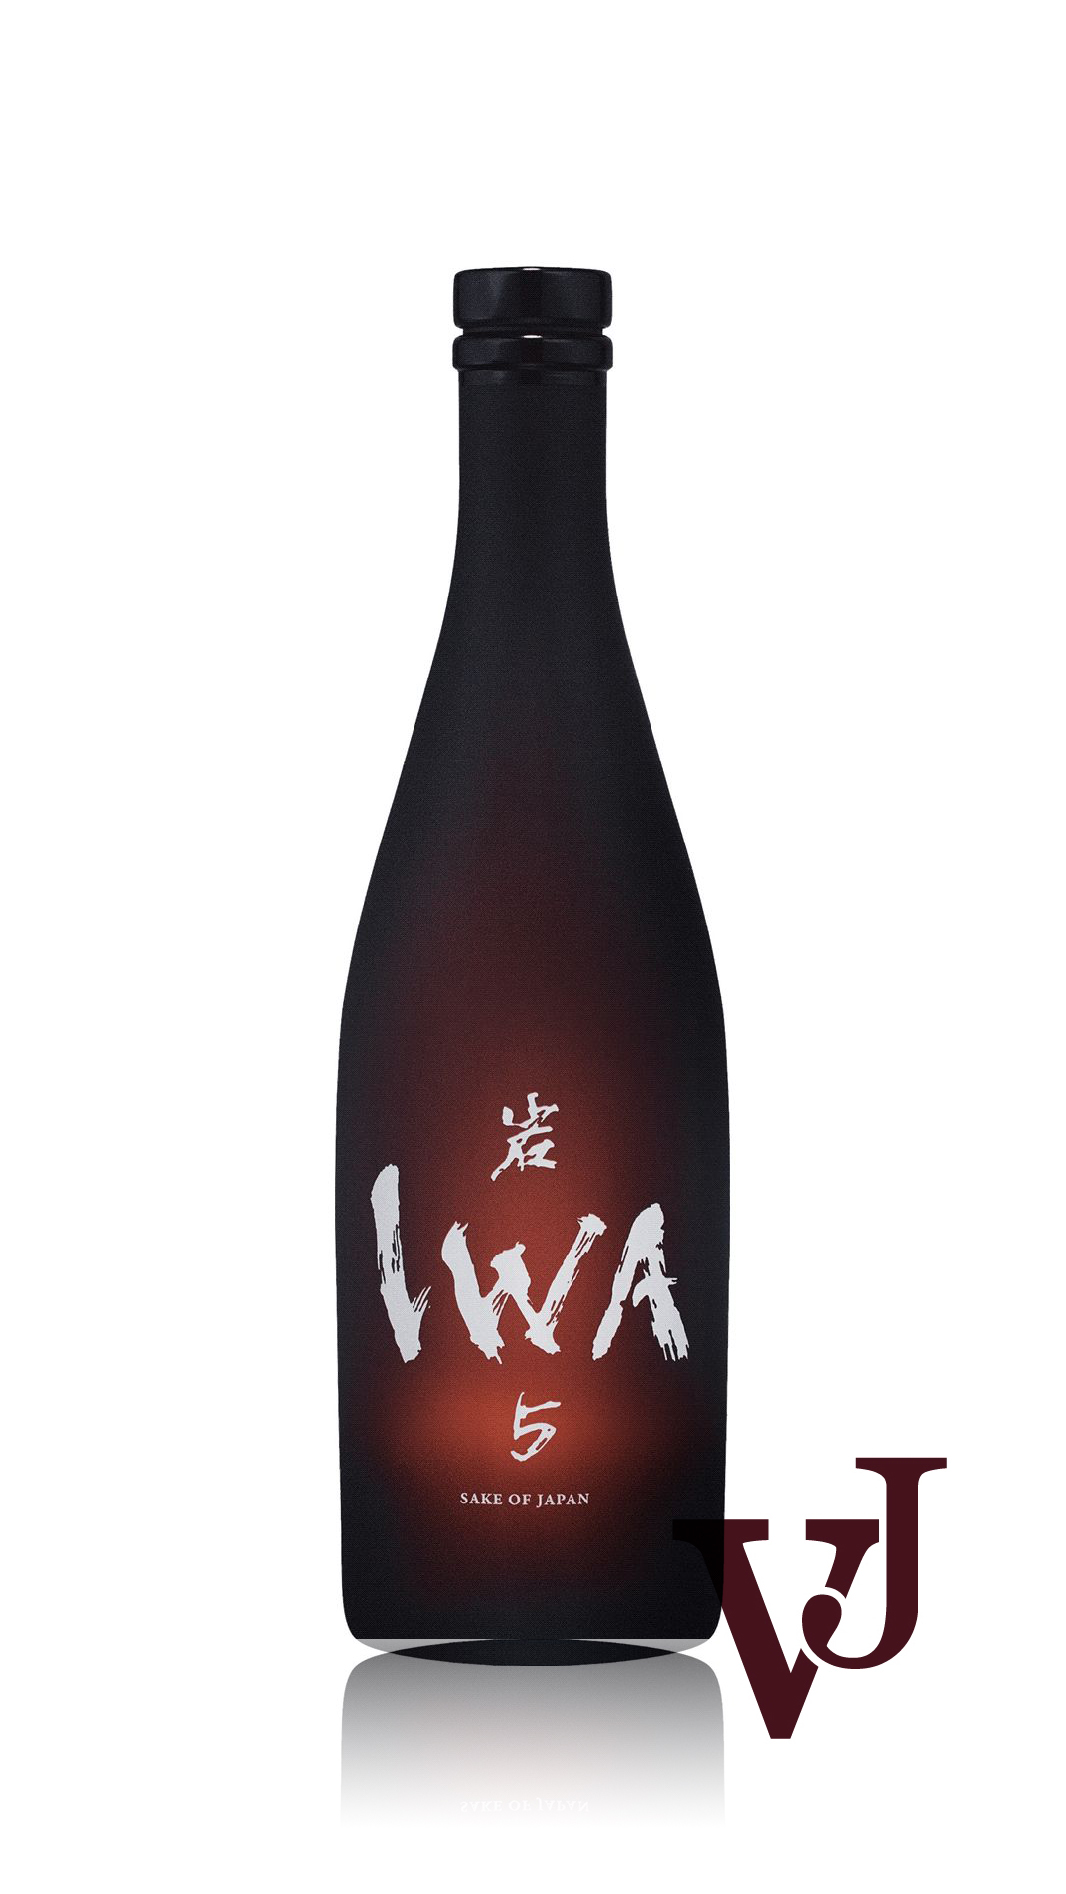 Sake - IWA 5 Assemblage 2 Sake 2020 artikel nummer 5714001 från producenten Shira IWA från området Japan